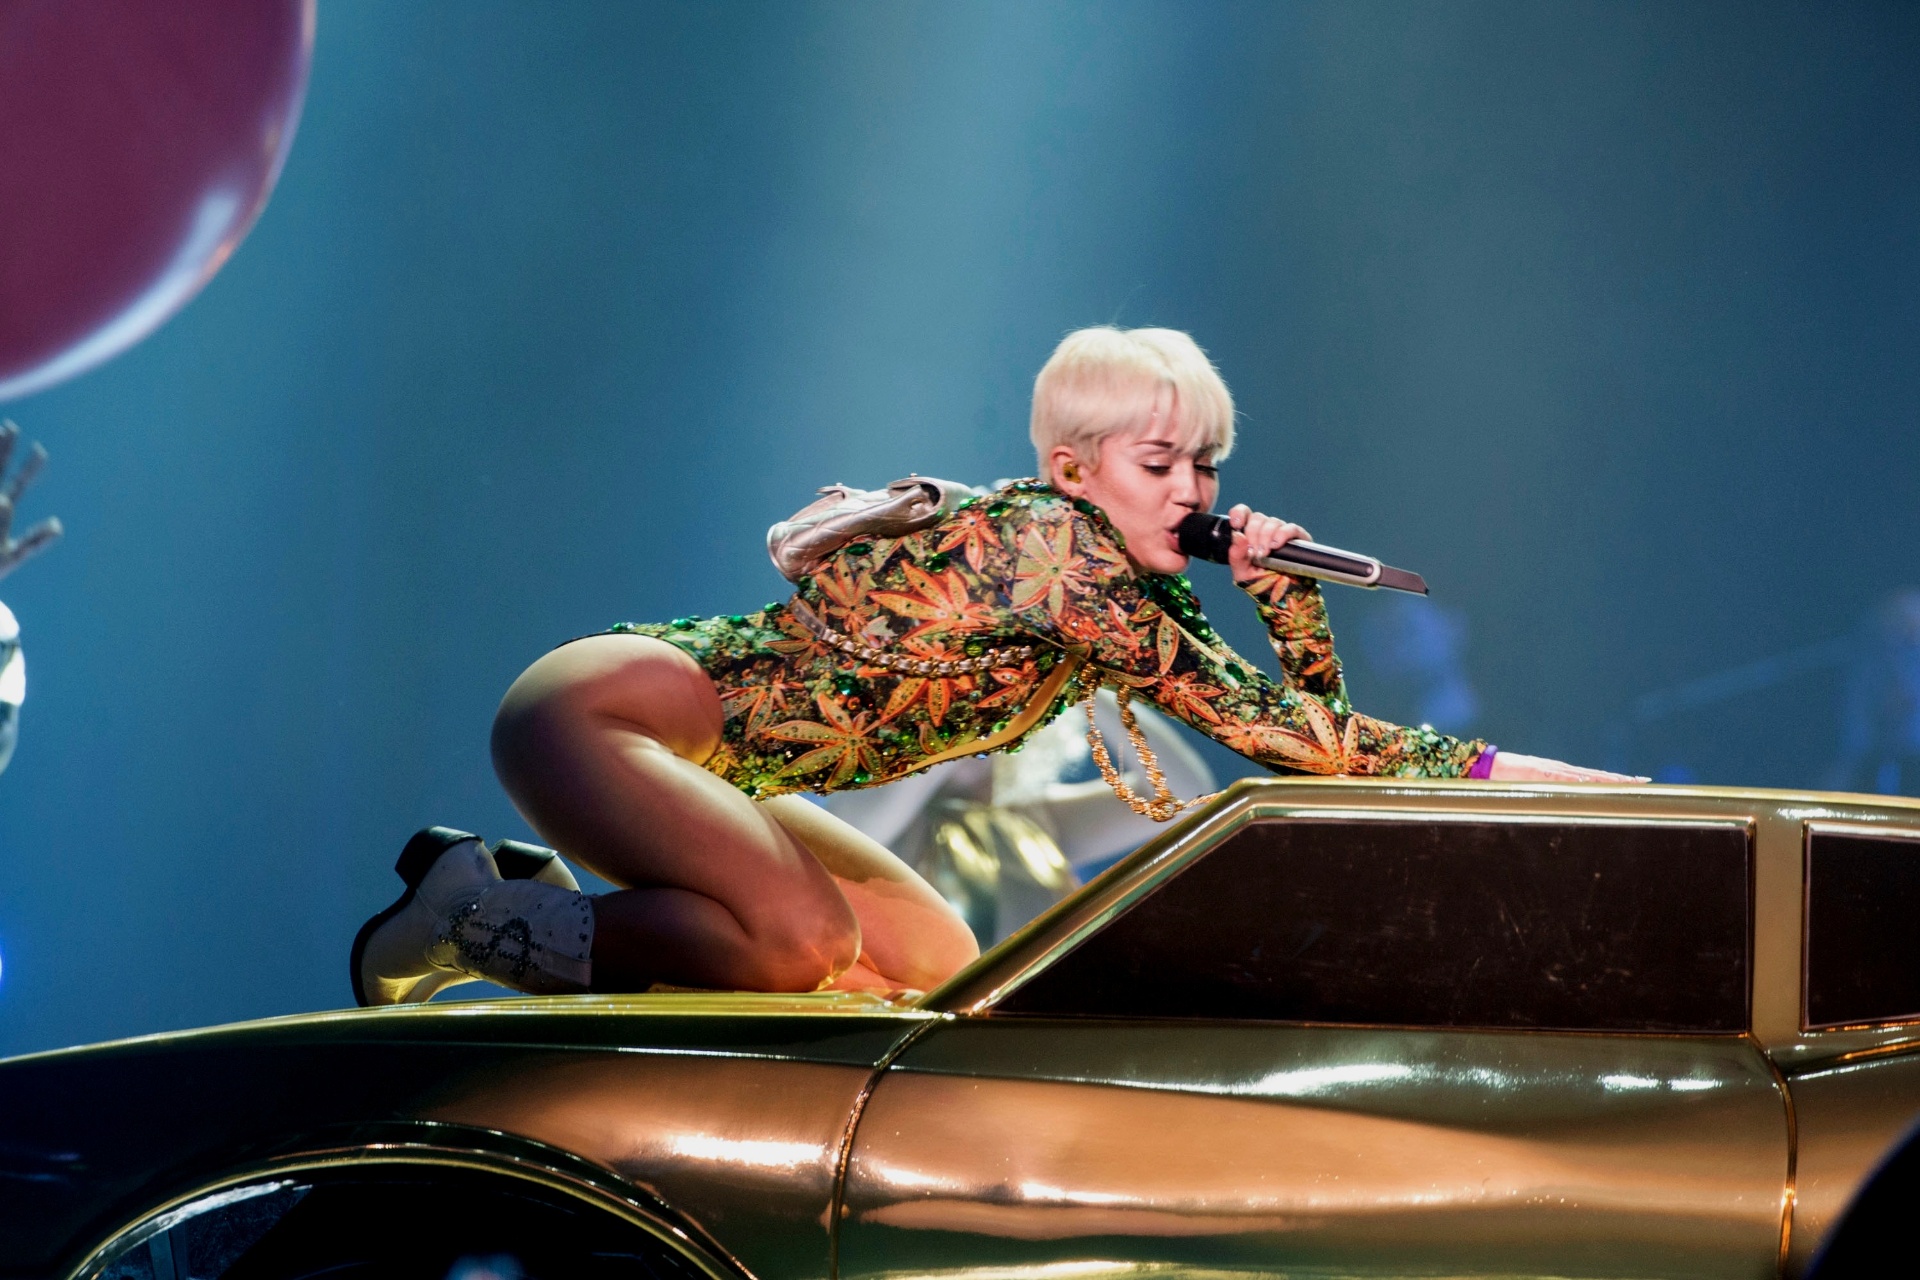 Miley Cyrus Critica Katy Perry Após Comentários Sobre Beijo Em Show 07 03 2014 Uol